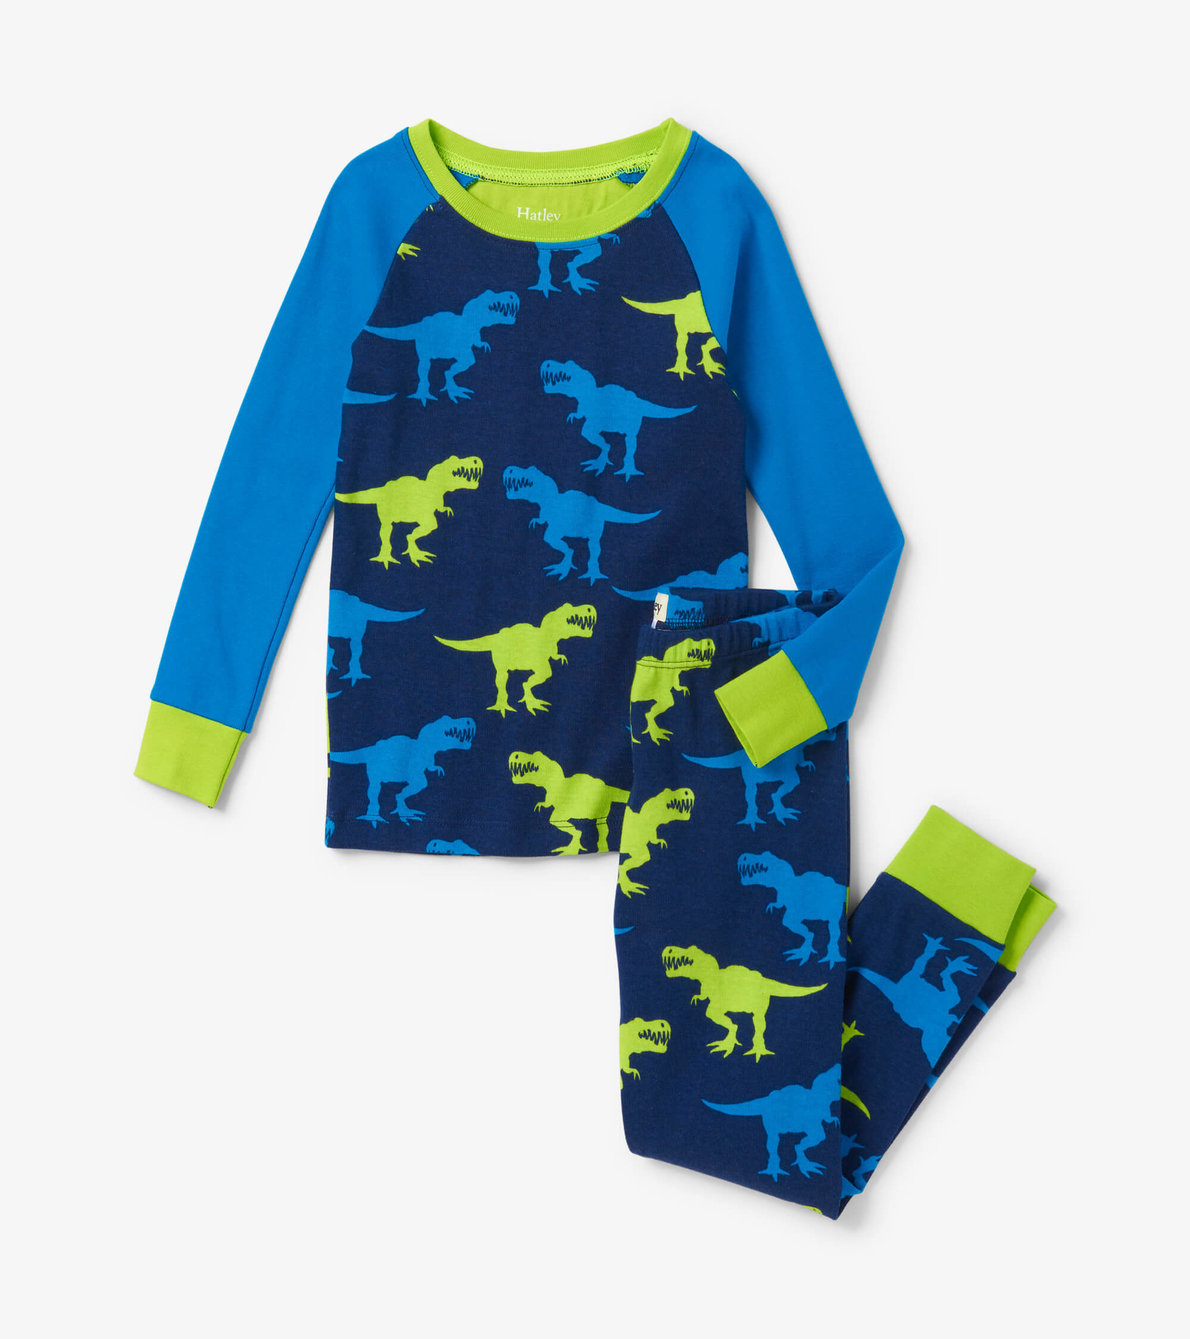 Agrandir l'image de Pyjama avec haut à manches raglan – T. rex géants